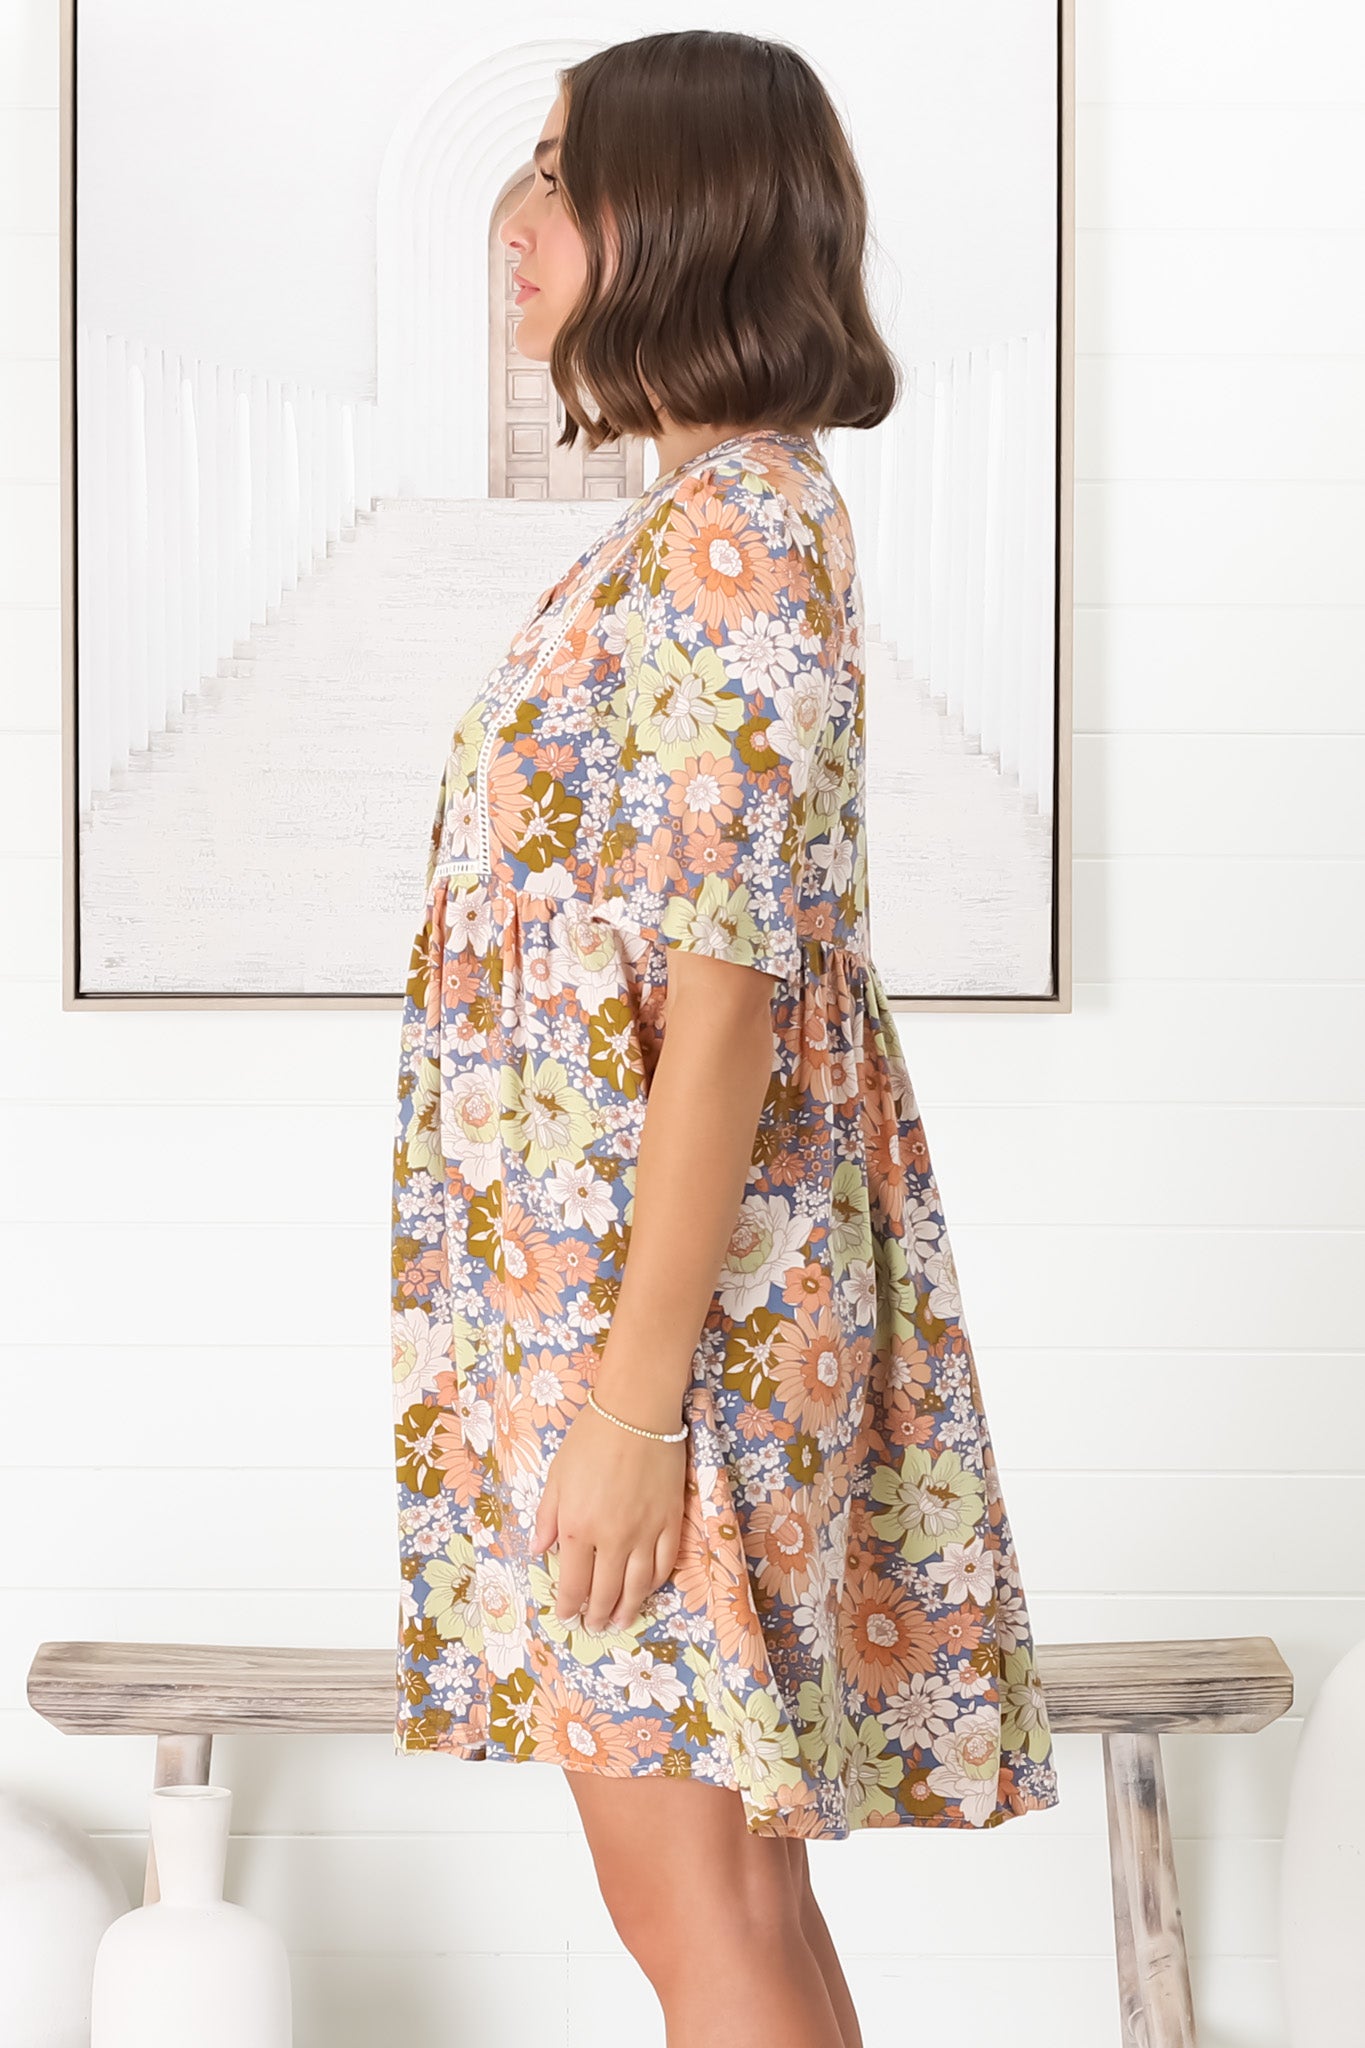 Chia Mini Dress - Babydoll Dress in Avianna Print